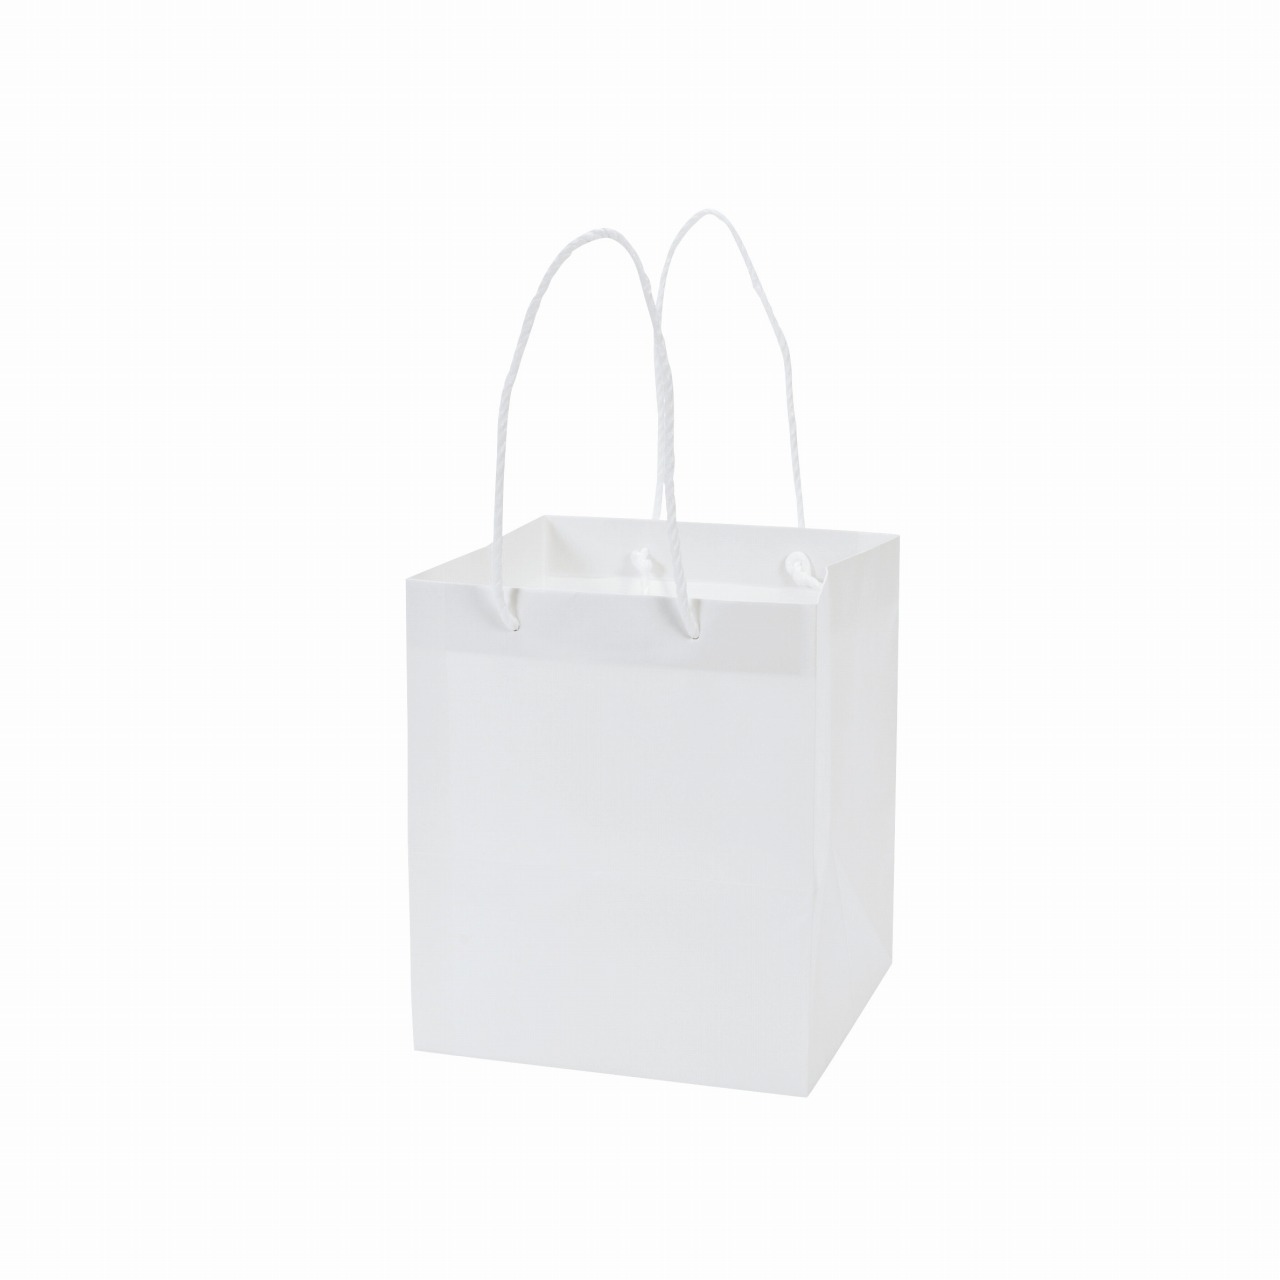 マイフラ 通販 アレンジバッグss 白 5枚入 紙袋 フラワーアレンジメント用 手提げ袋 店舗用資材 Sh 001 白 リボン ラッピング 包装資材 全国にmagiq 花器 花資材などをお届けします